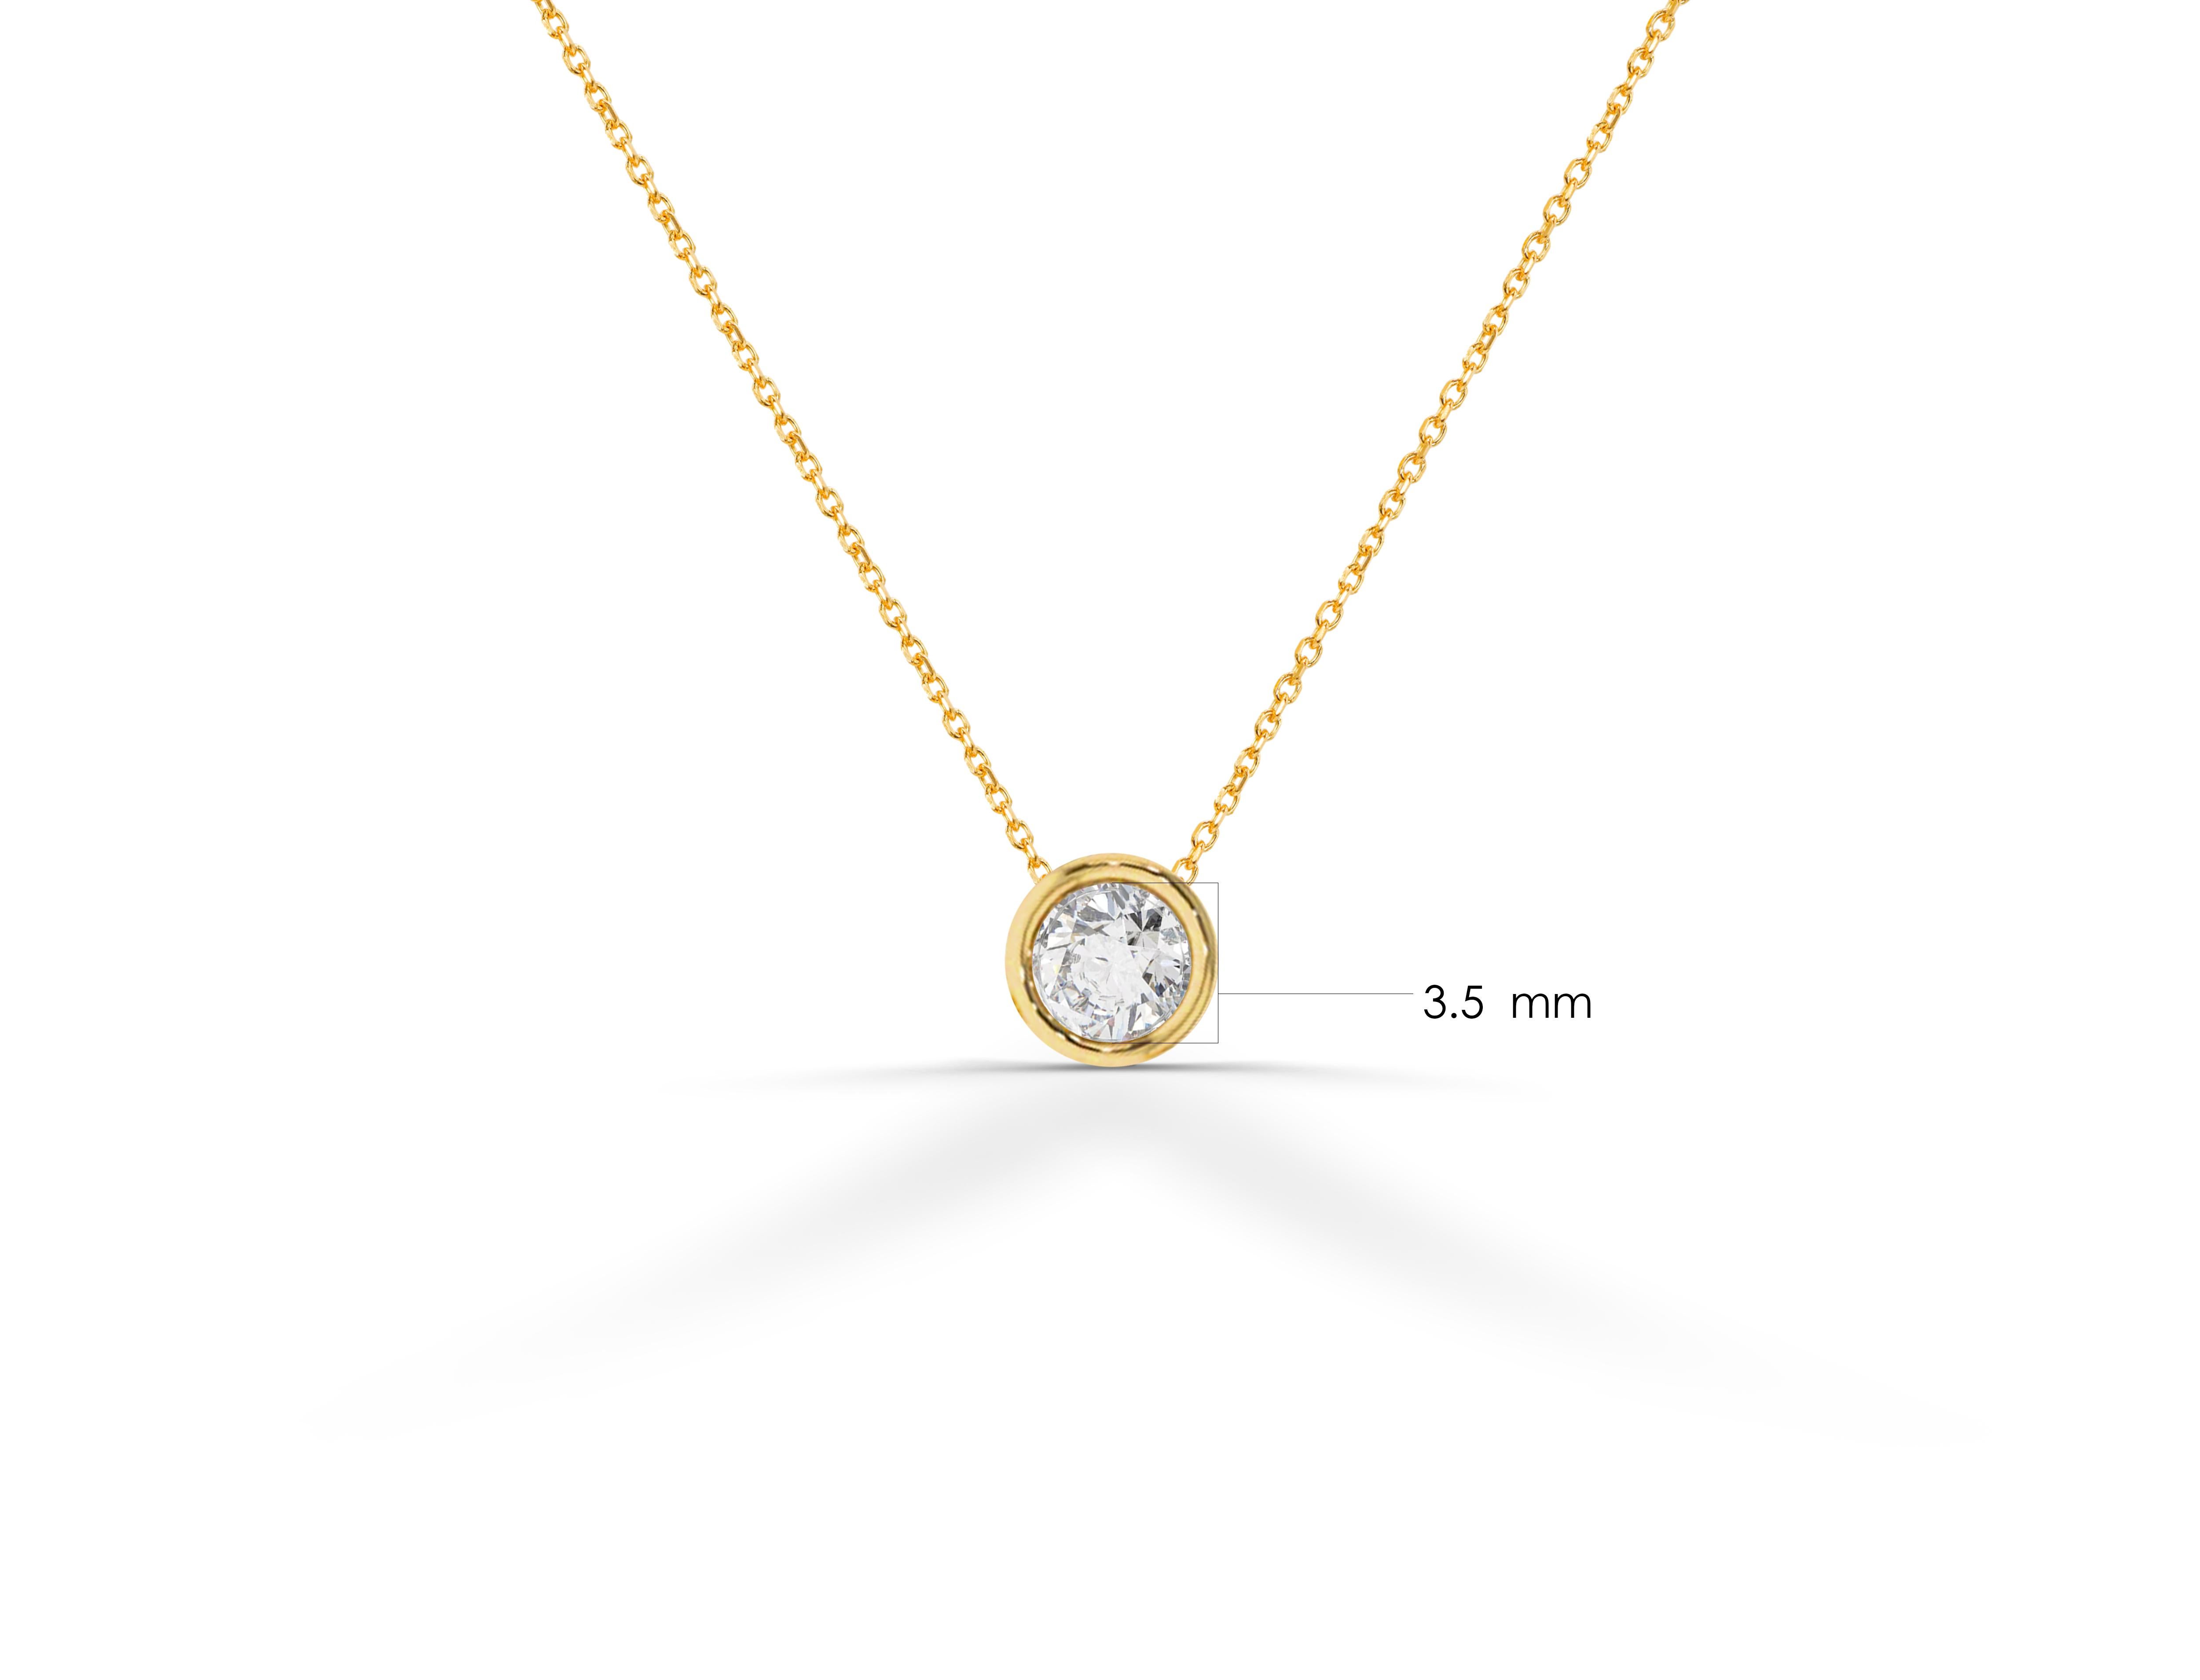 Le collier solitaire en diamant est fabriqué en or massif 14k disponible en trois couleurs, or blanc / or rose / or jaune.

Un diamant naturel brillant, blanc et étincelant, serti au centre d'une fine chaîne en or, un choix parfait pour une